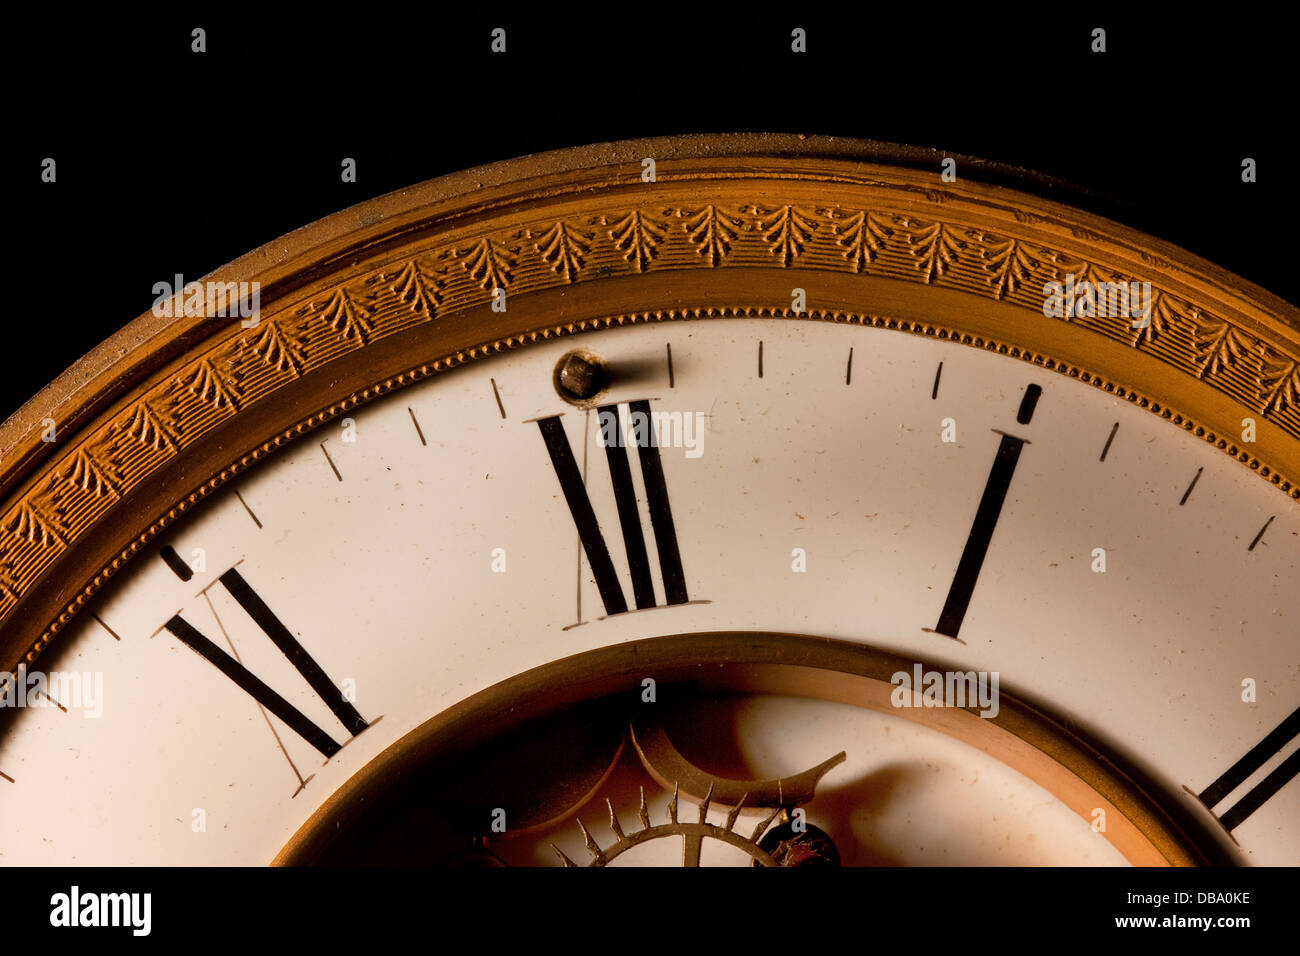 Die römischen Ziffern eine alte antike viktorianische Uhr im Fokus Stockfoto